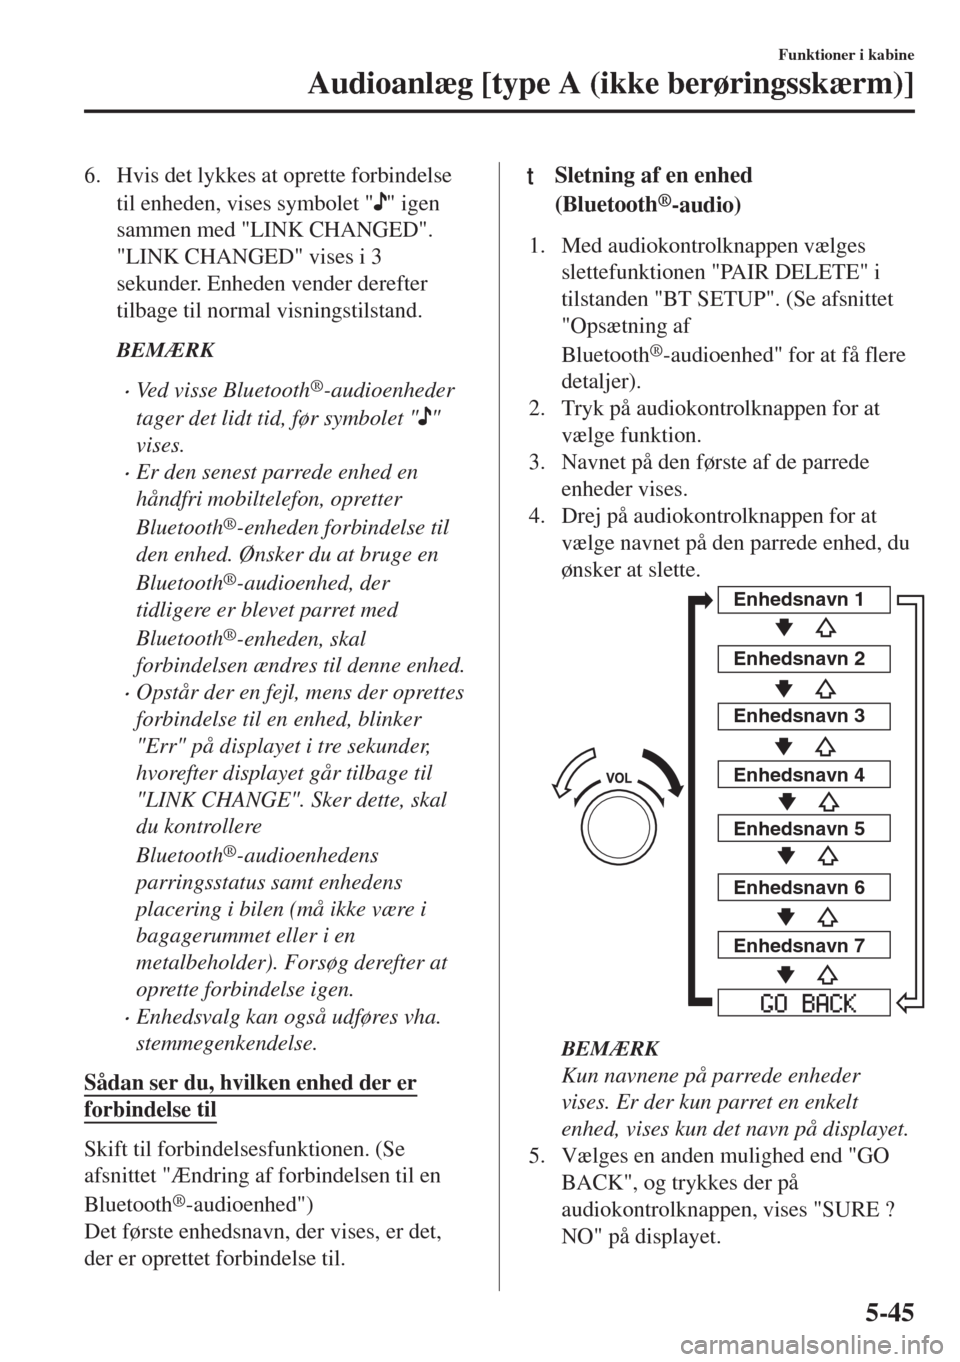 MAZDA MODEL 6 2018  Instruktionsbog (in Danish) 6. Hvis det lykkes at oprette forbindelse
til enheden, vises symbolet "
" igen
sammen med "LINK CHANGED".
"LINK CHANGED" vises i 3
sekunder. Enheden vender derefter
tilbage til normal visningstilstand